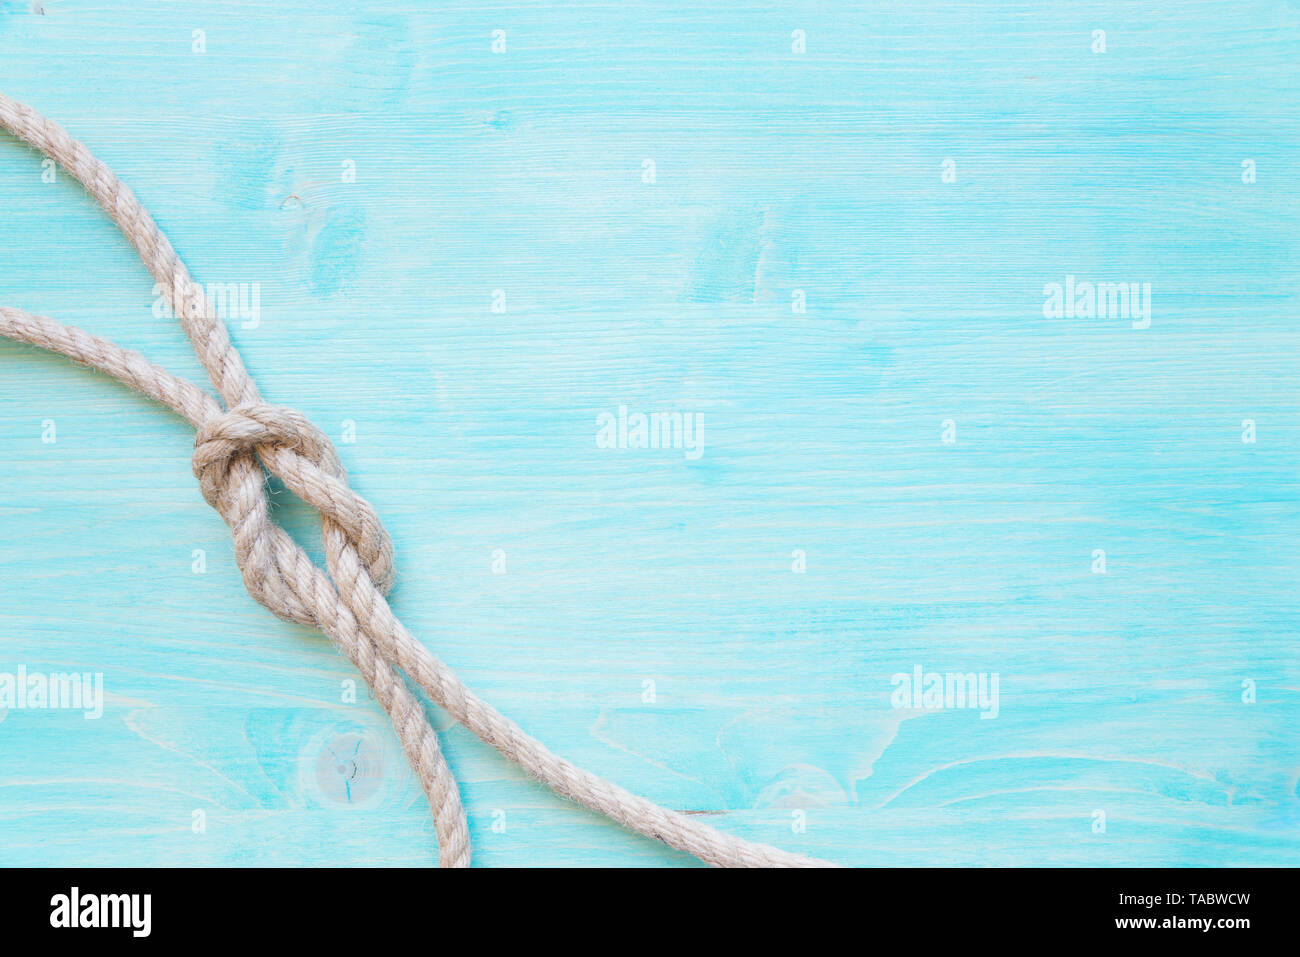 Corde de chanvre brut knot mer est sur le fond bleu a disparu des planches. Concept Marine Banque D'Images